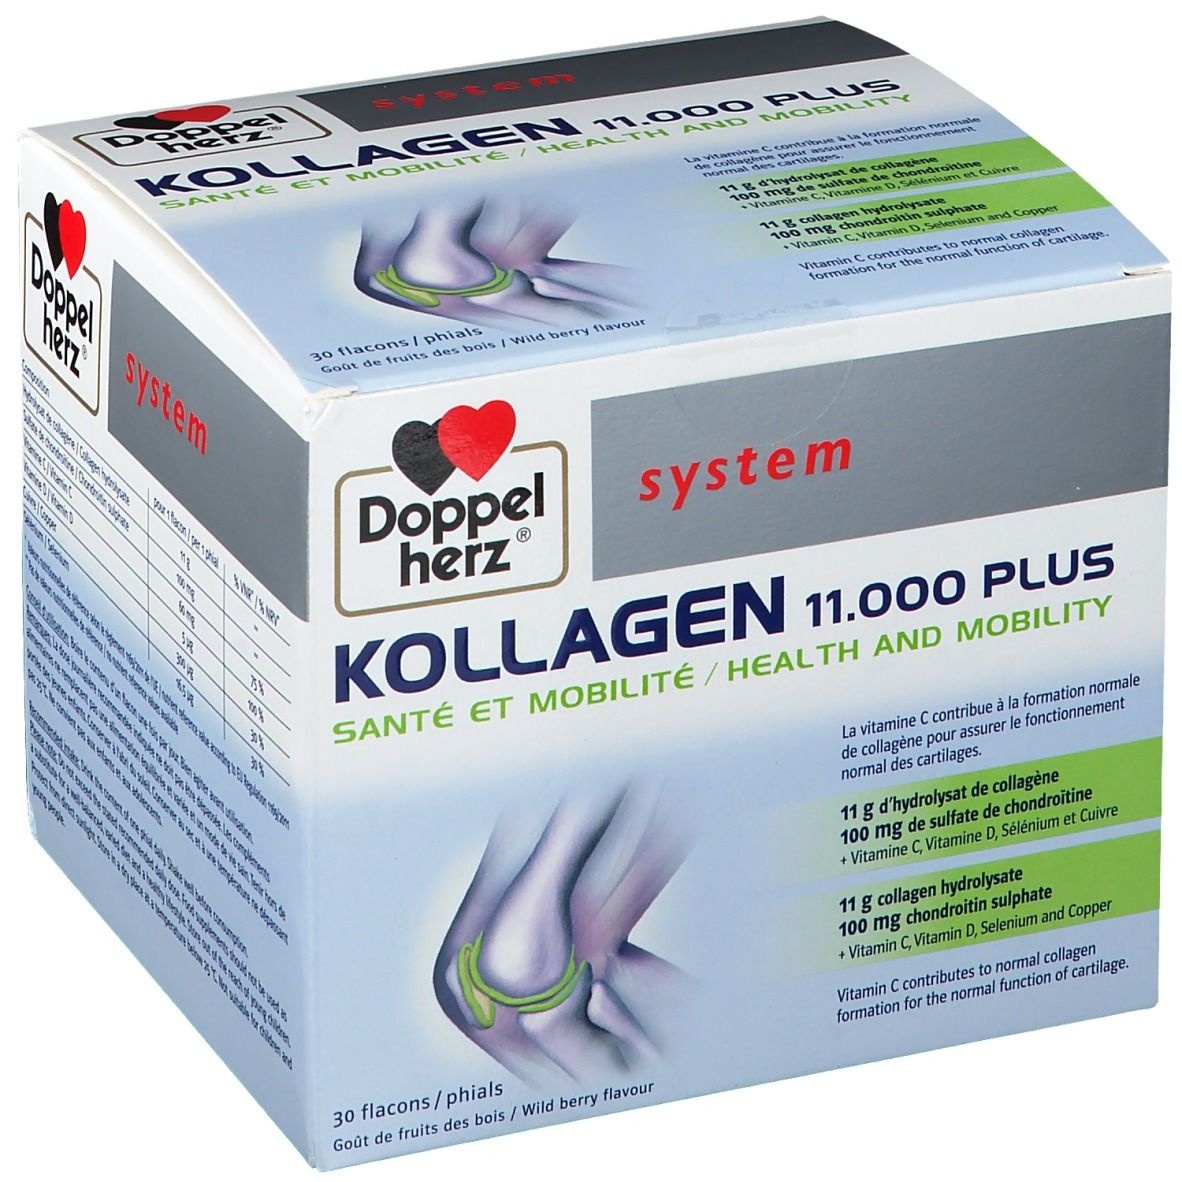 Doppelherz® system Kollagen 11.000 Plus Santé + Mobilité 30 pc(s) Ampoule(s)